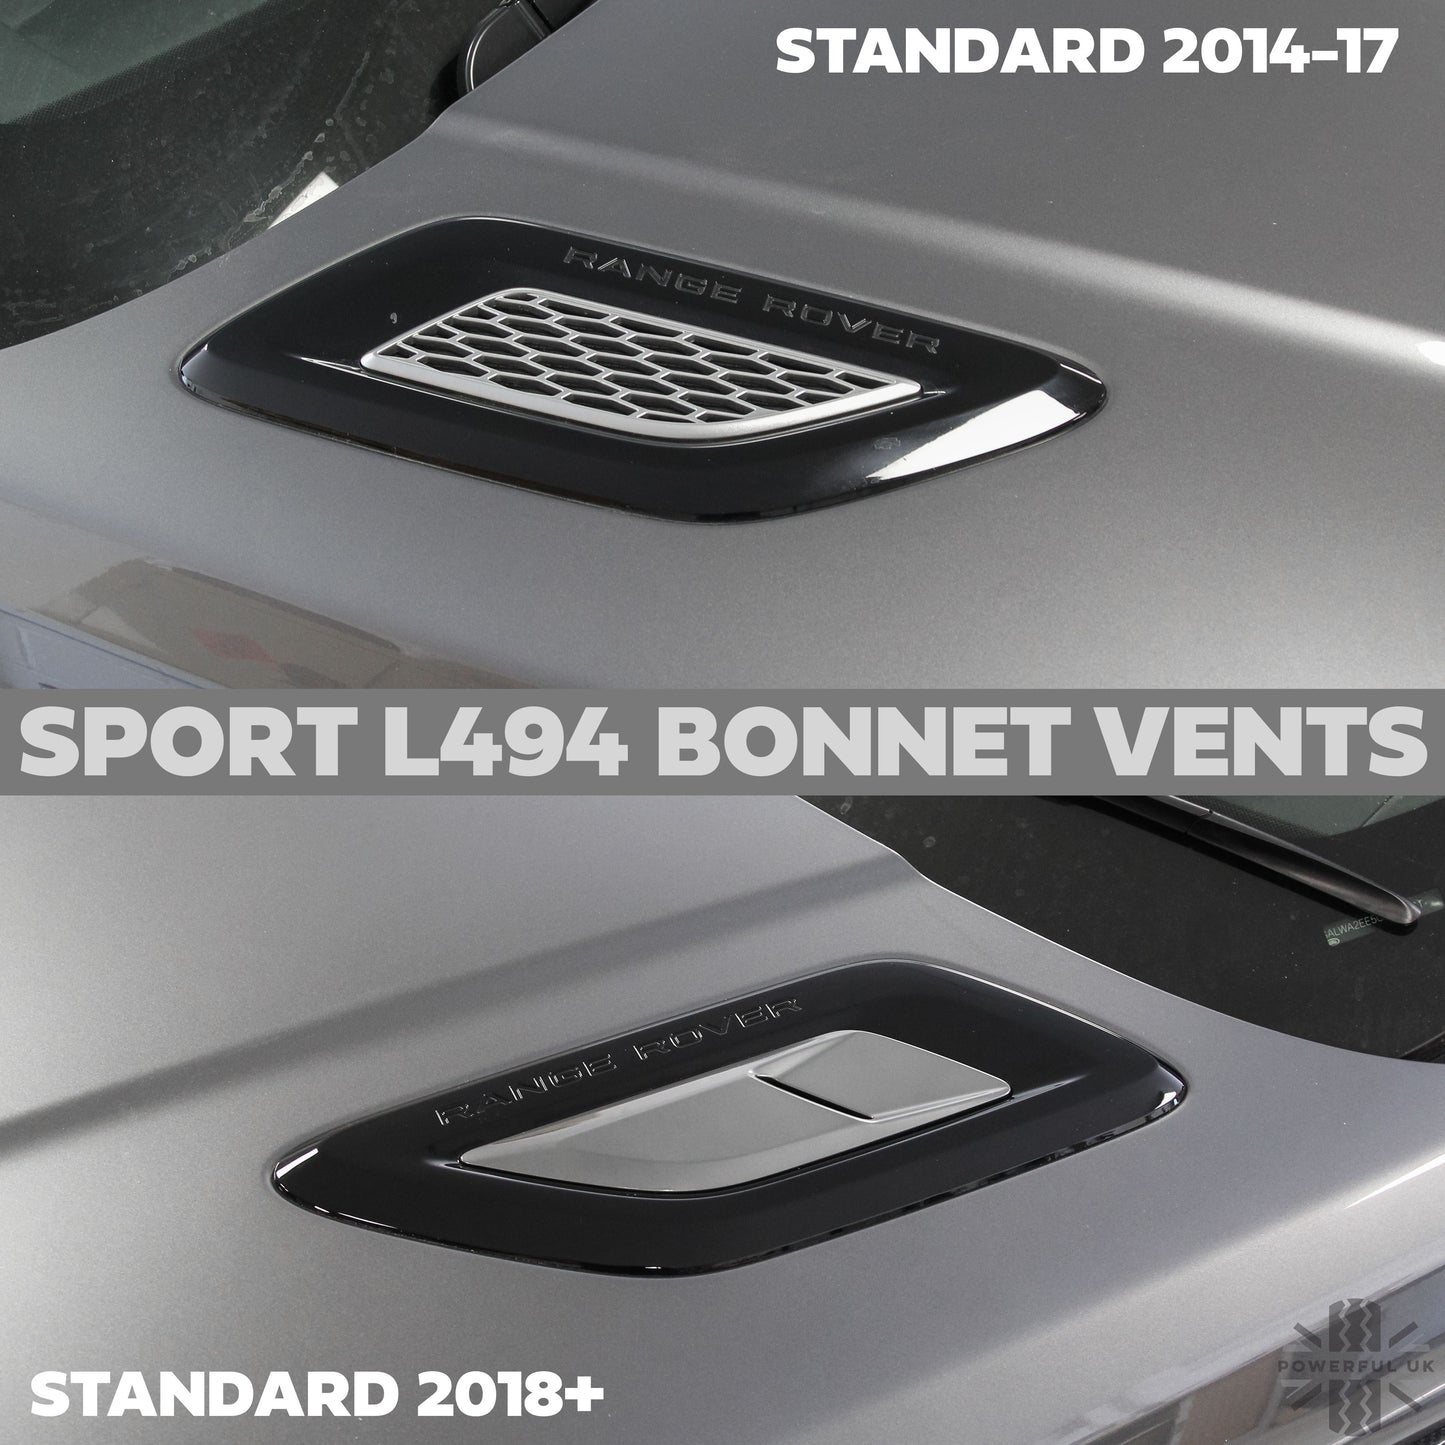 Bonnet Vent 'Double Louvre' Inserts for Range Rover Sport L494 - Silver